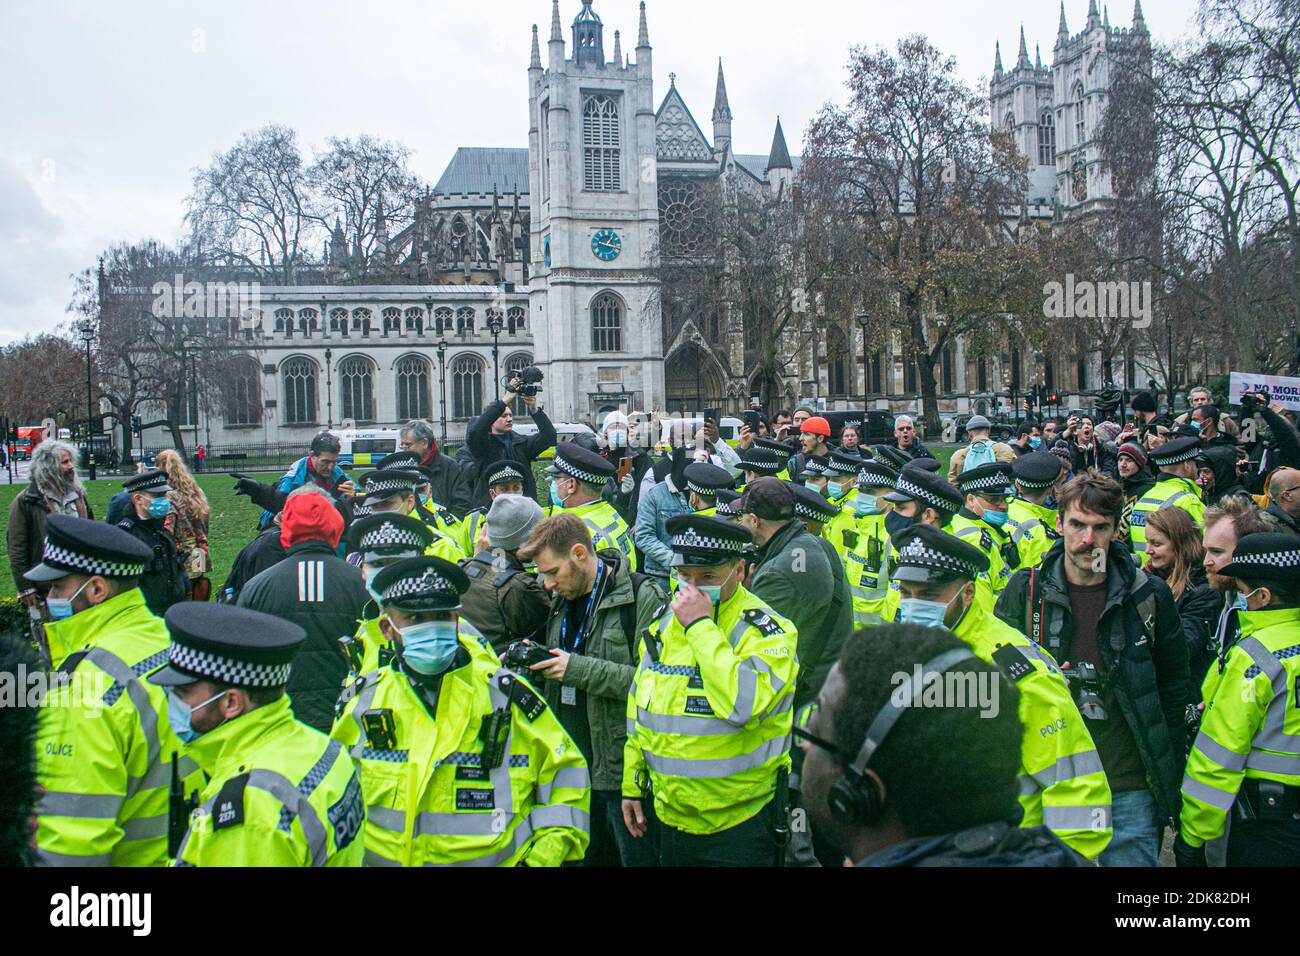 WESTMINSTER LONDRES 14 décembre 2020. La police et les manifestants anti-vax s'affrontent au cours d'une manifestation anti-verrouillage à Westminster alors que Londres se propose de passer au niveau 3 d'alerte de Covid avec des retrictions plus sévères dans les prochains jours. Credit: amer ghazzal / Alamy Live News Banque D'Images